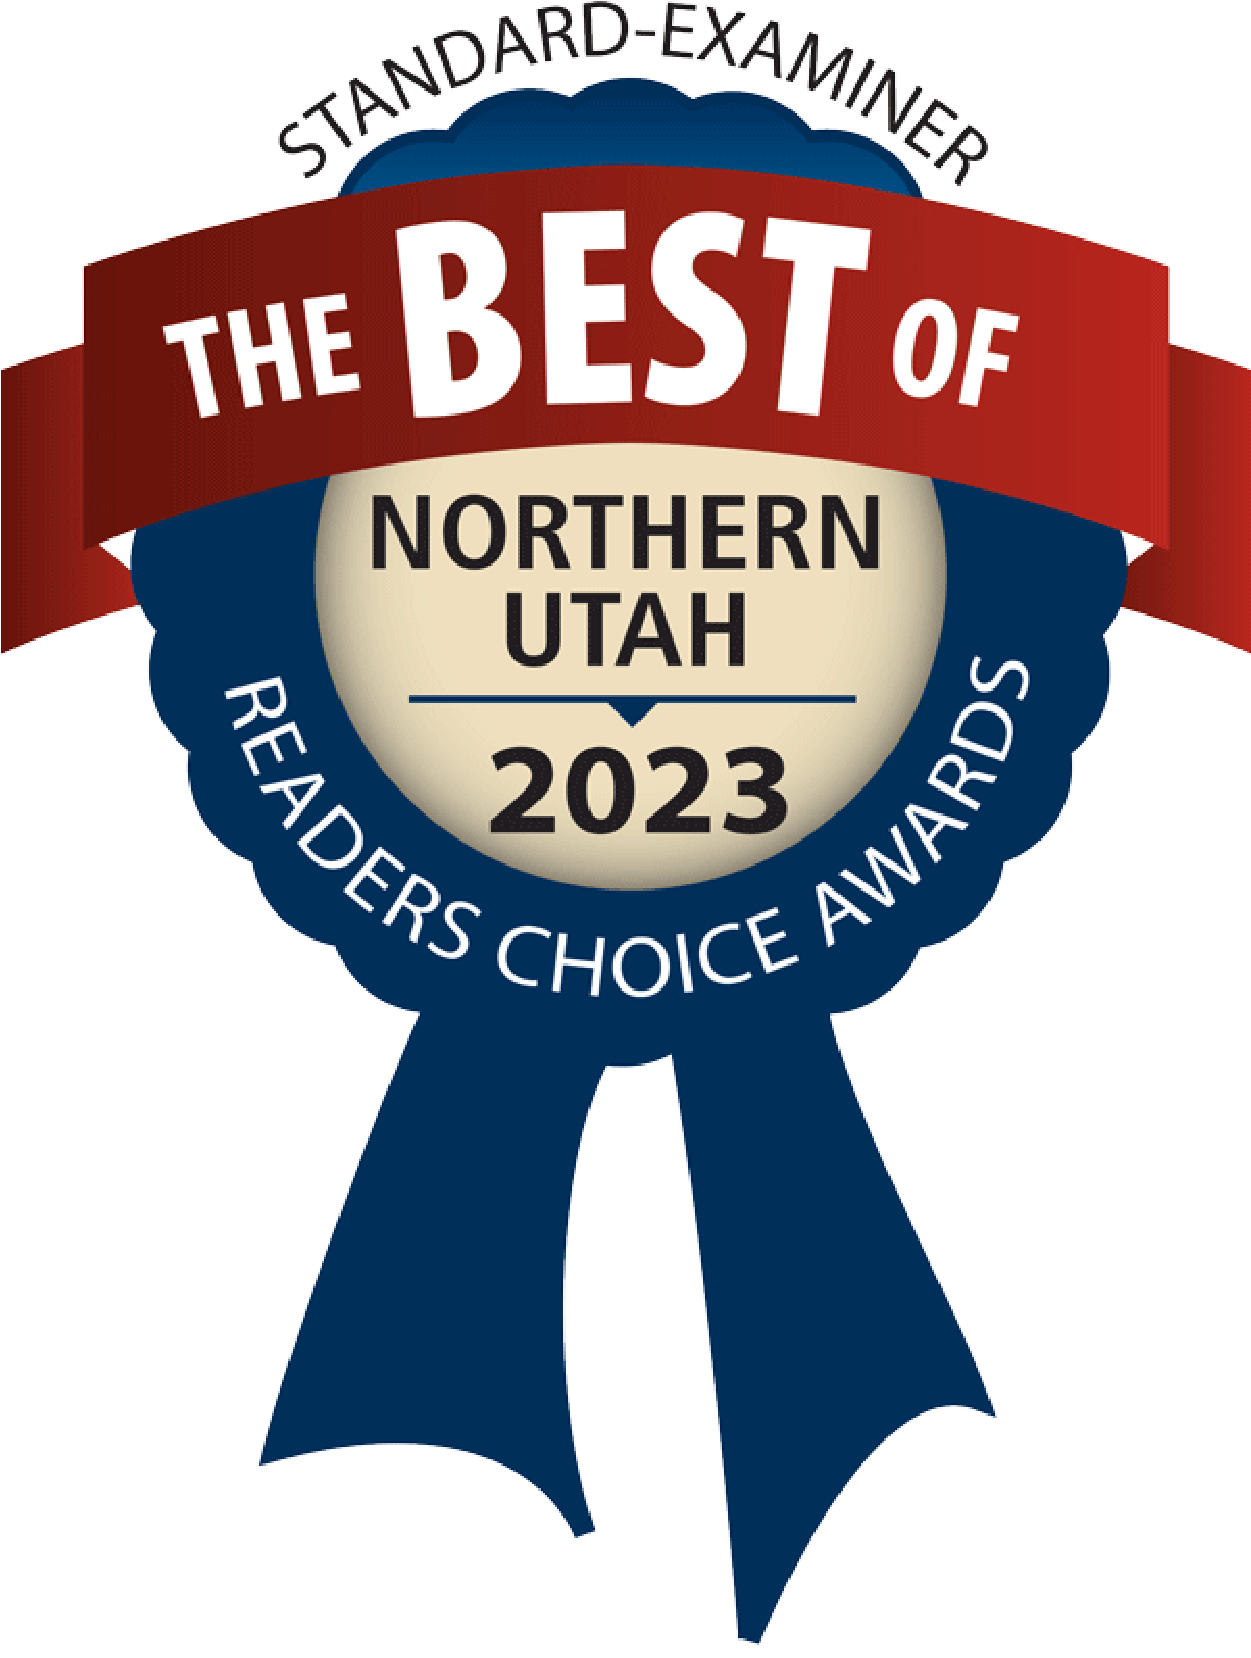 Best of Northern Utah 2023